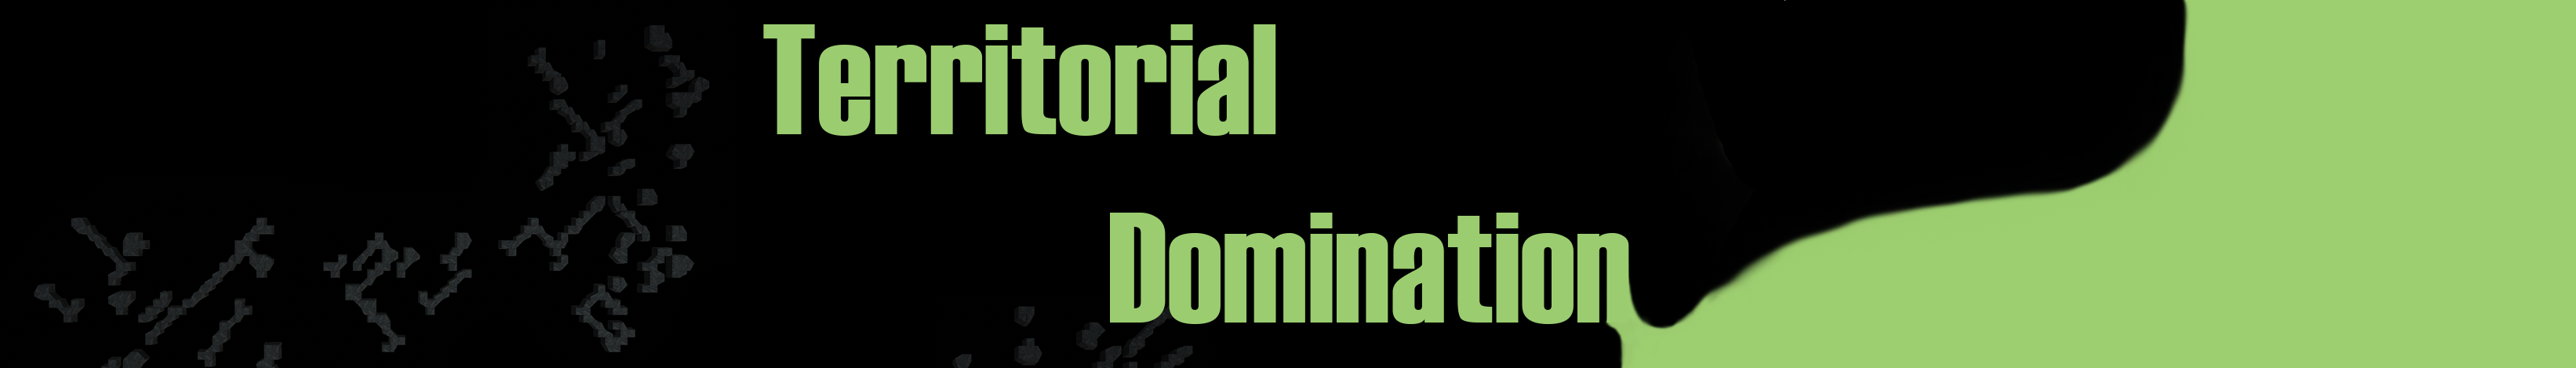 Territorial Domination